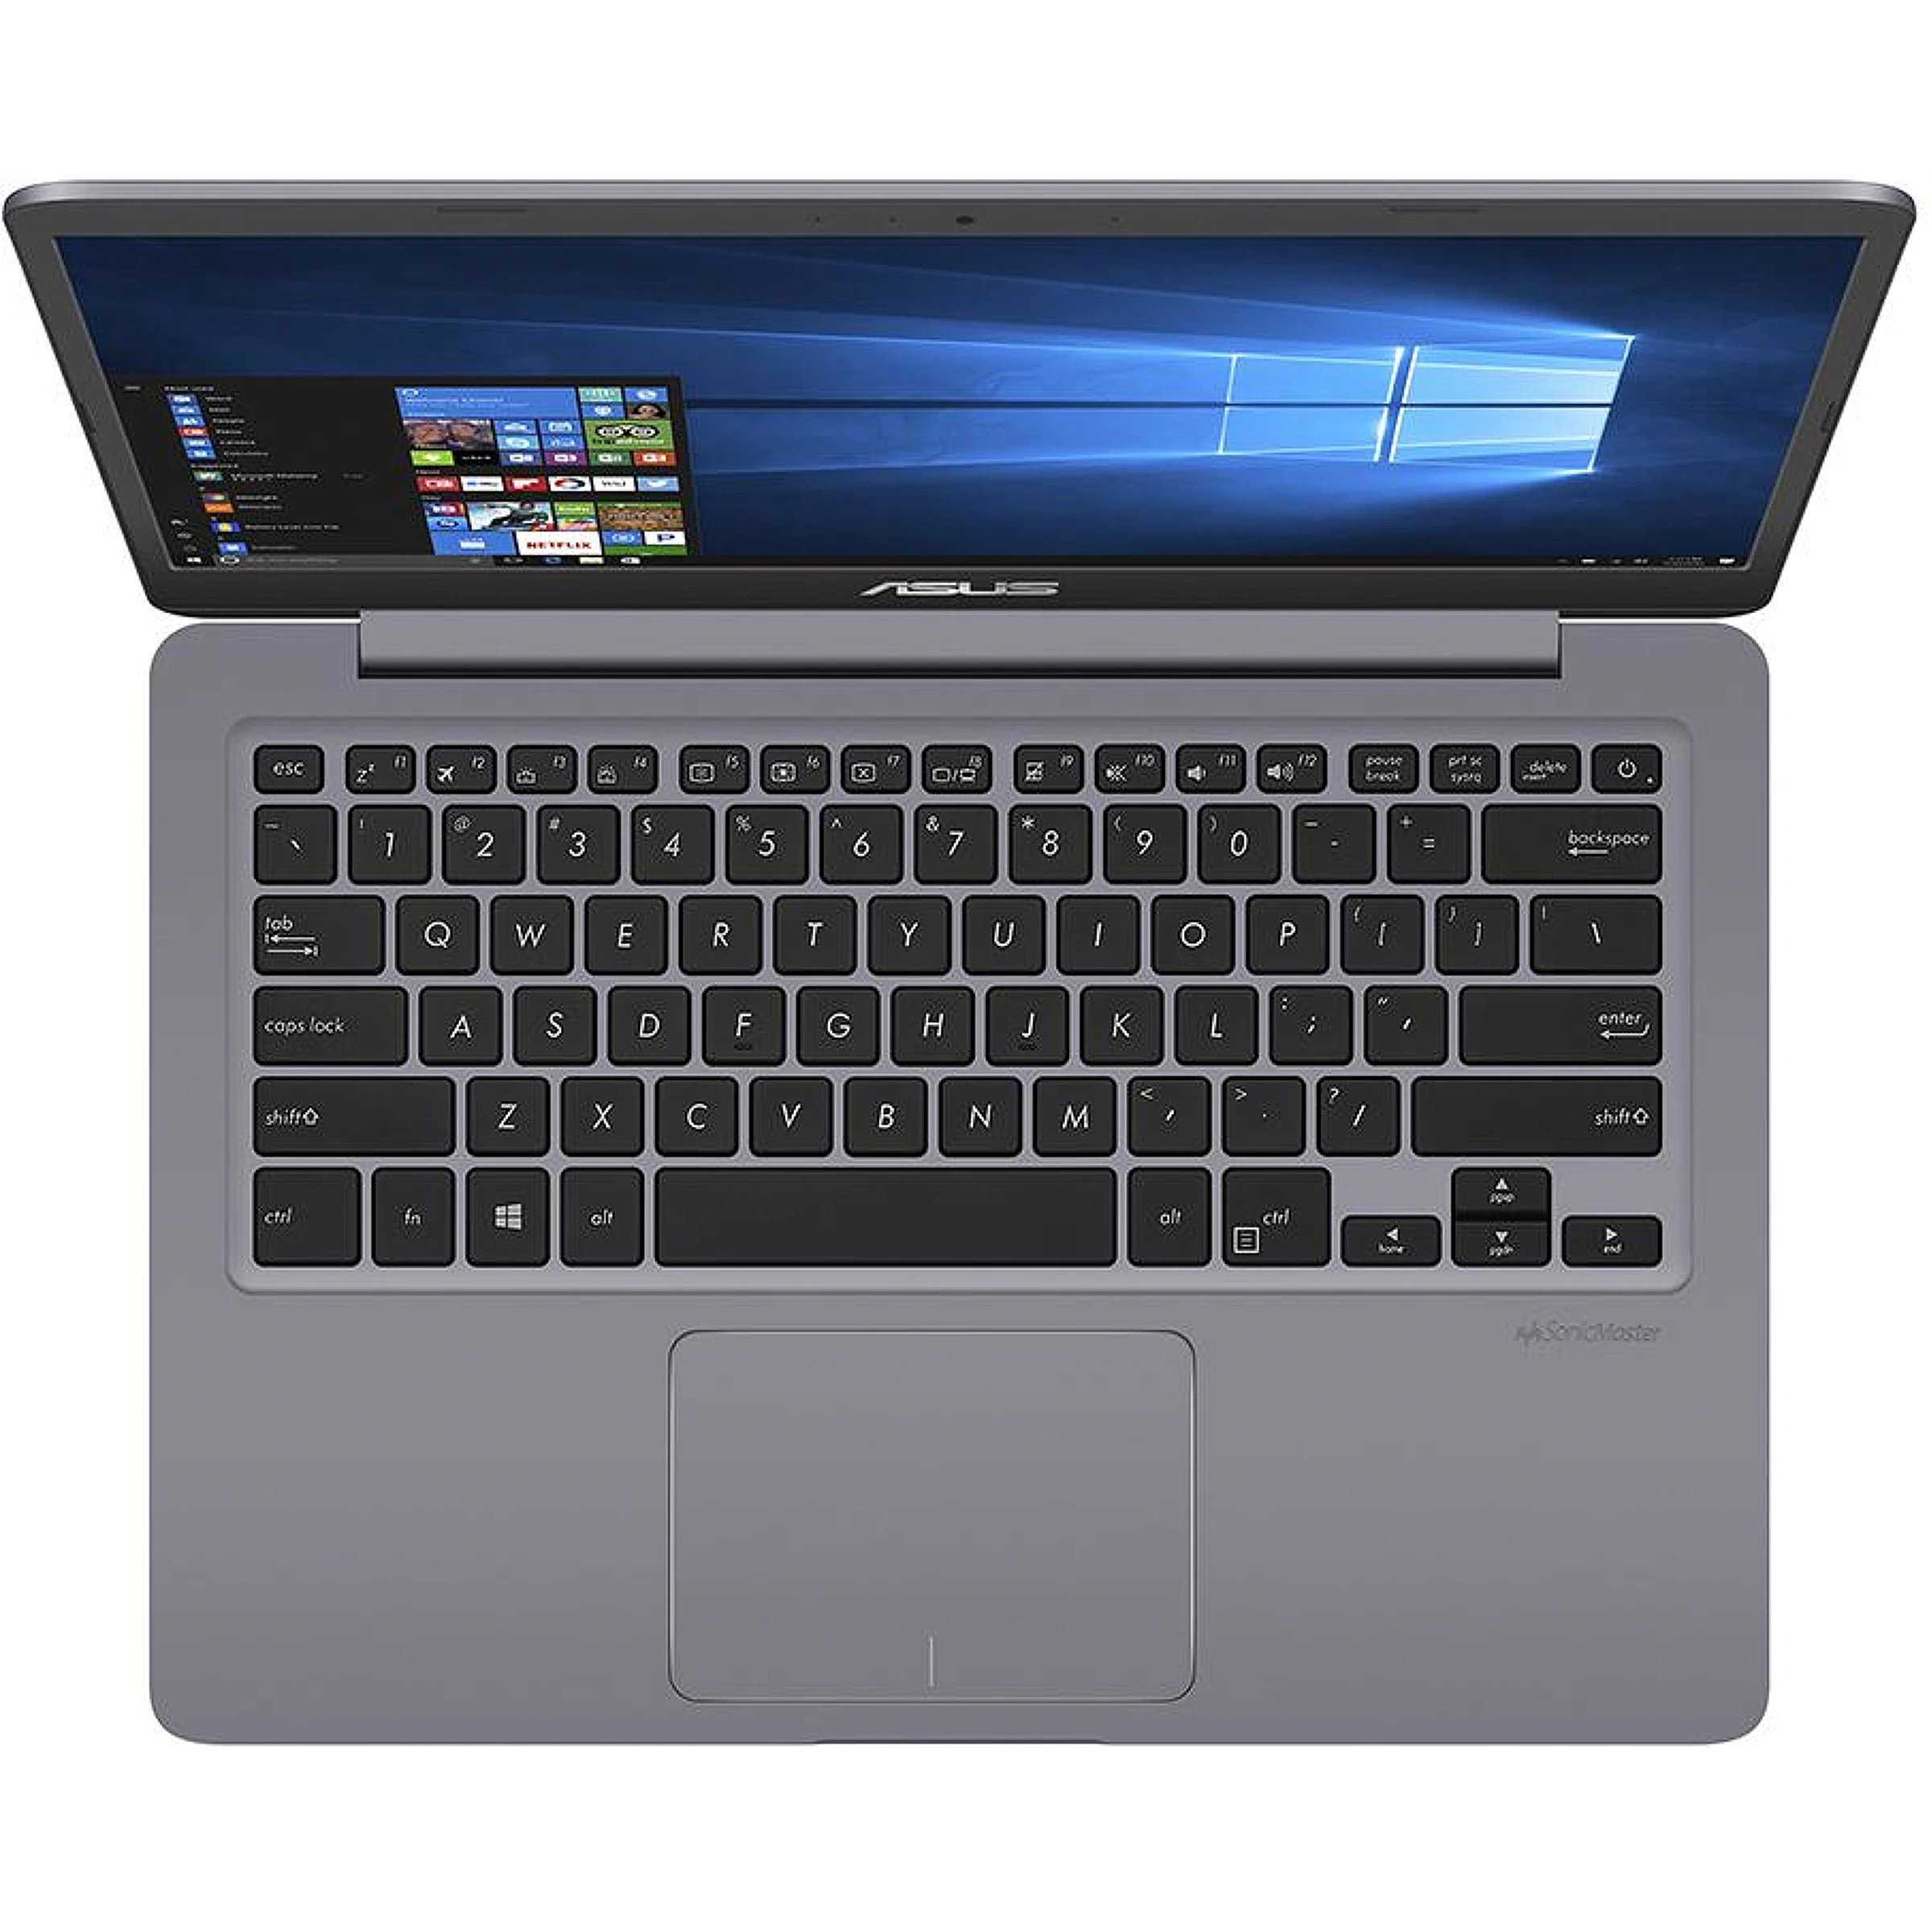 Asus vivobook s14 s410un grey (s410un-eb056t) ᐈ нужно купить  ноутбук?